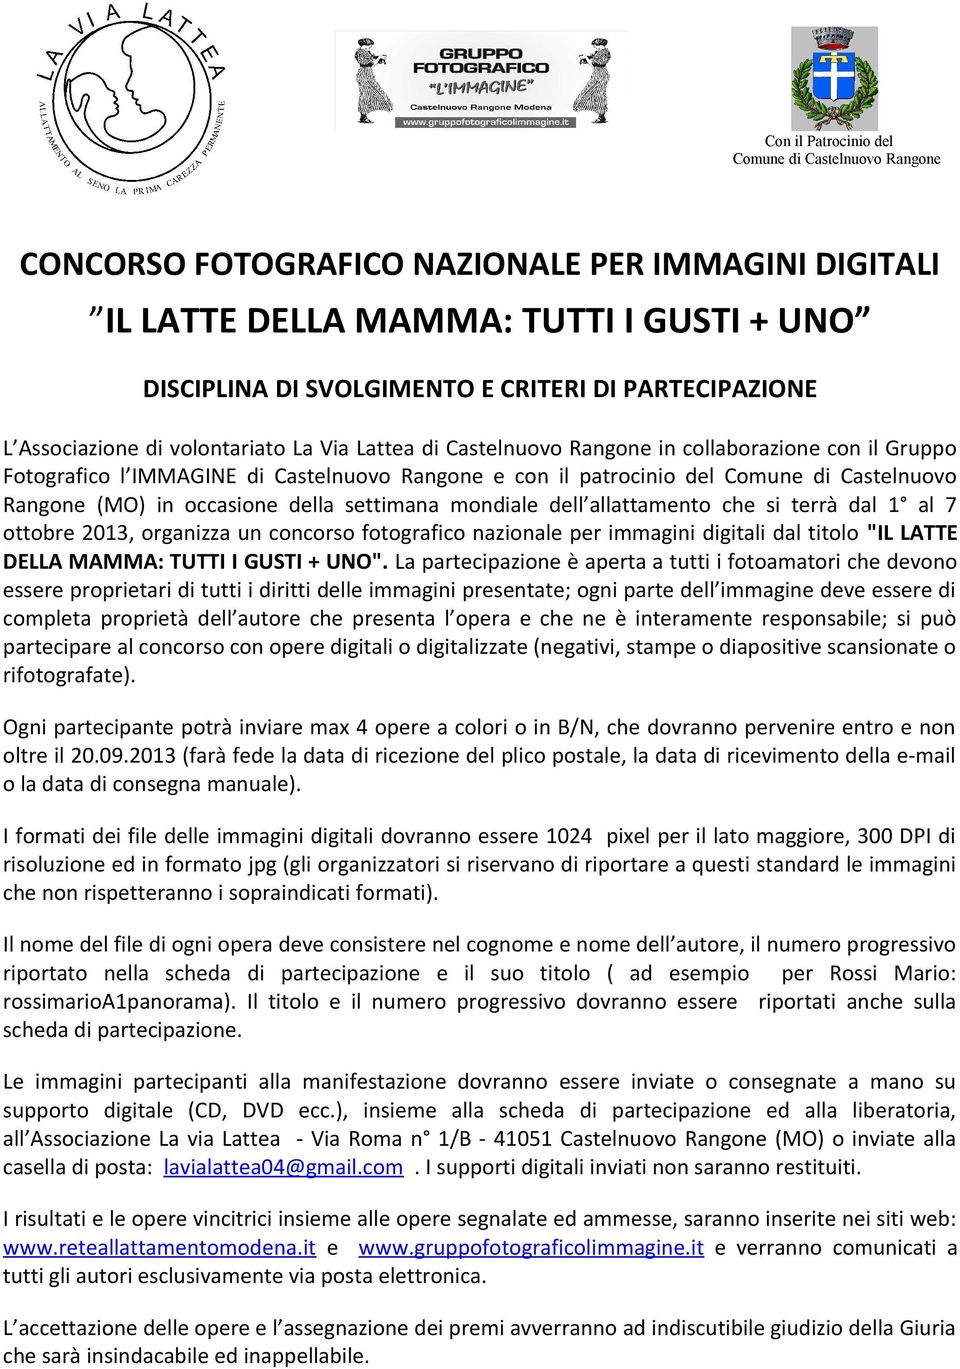 Castelnuovo Rangone (MO) in occasione della settimana mondiale dell allattamento che si terrà dal 1 al 7 ottobre 2013, organizza un concorso fotografico nazionale per immagini digitali dal titolo "IL